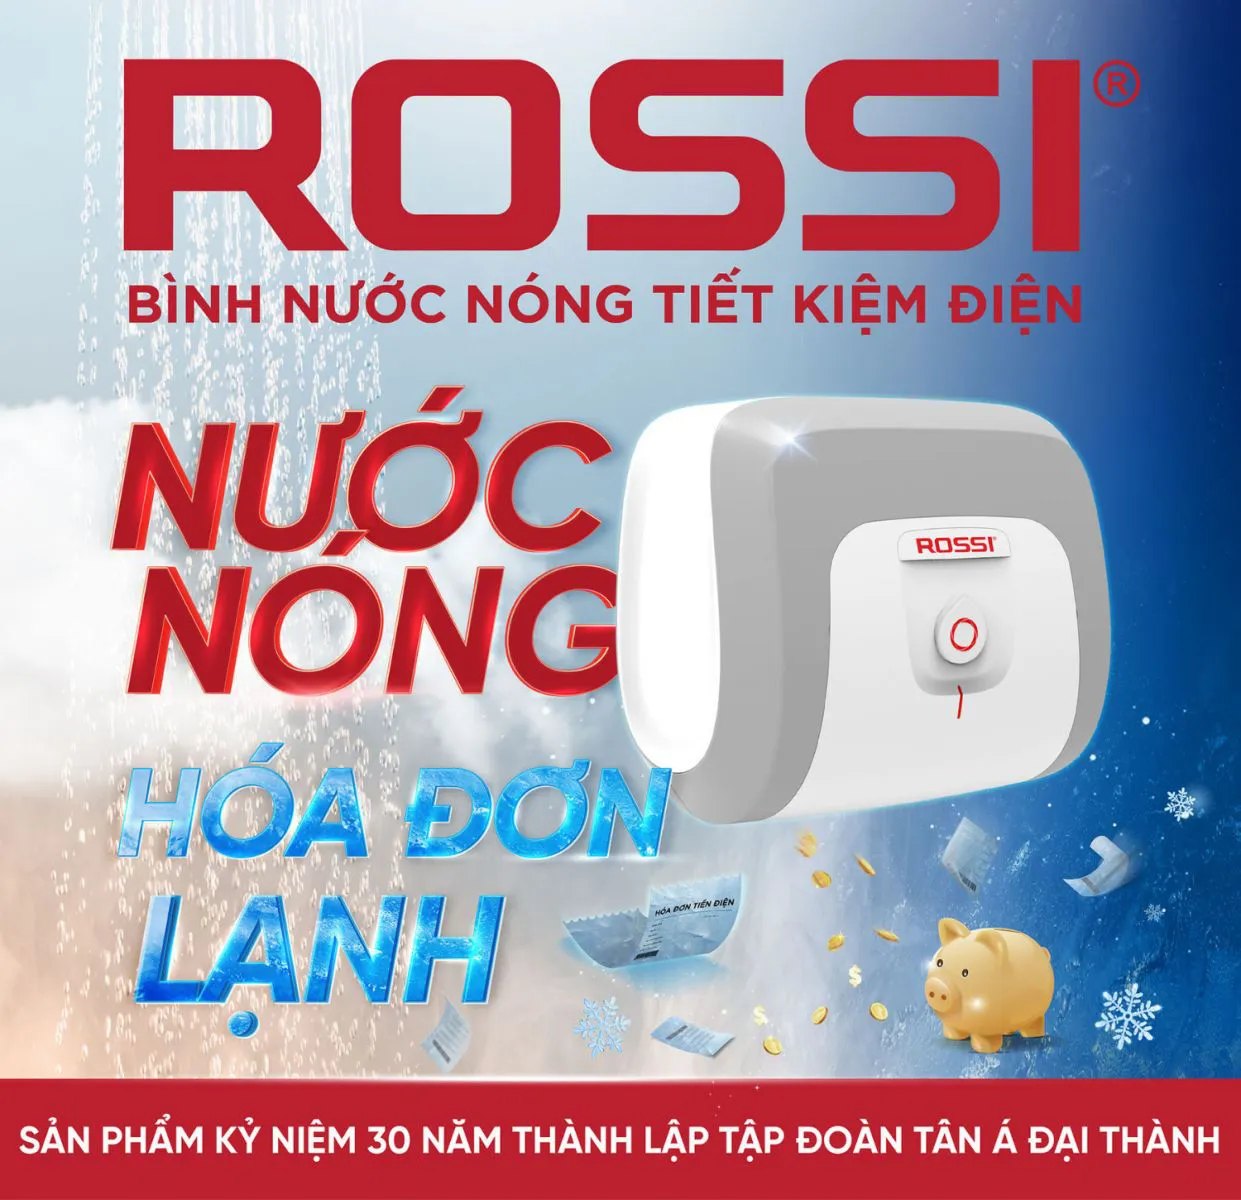 Bình nước nóng Rossi 30 có thiết kế hiện đại, tinh tế cùng ưu điểm nổi bật về khả năng tiết kiệm điện